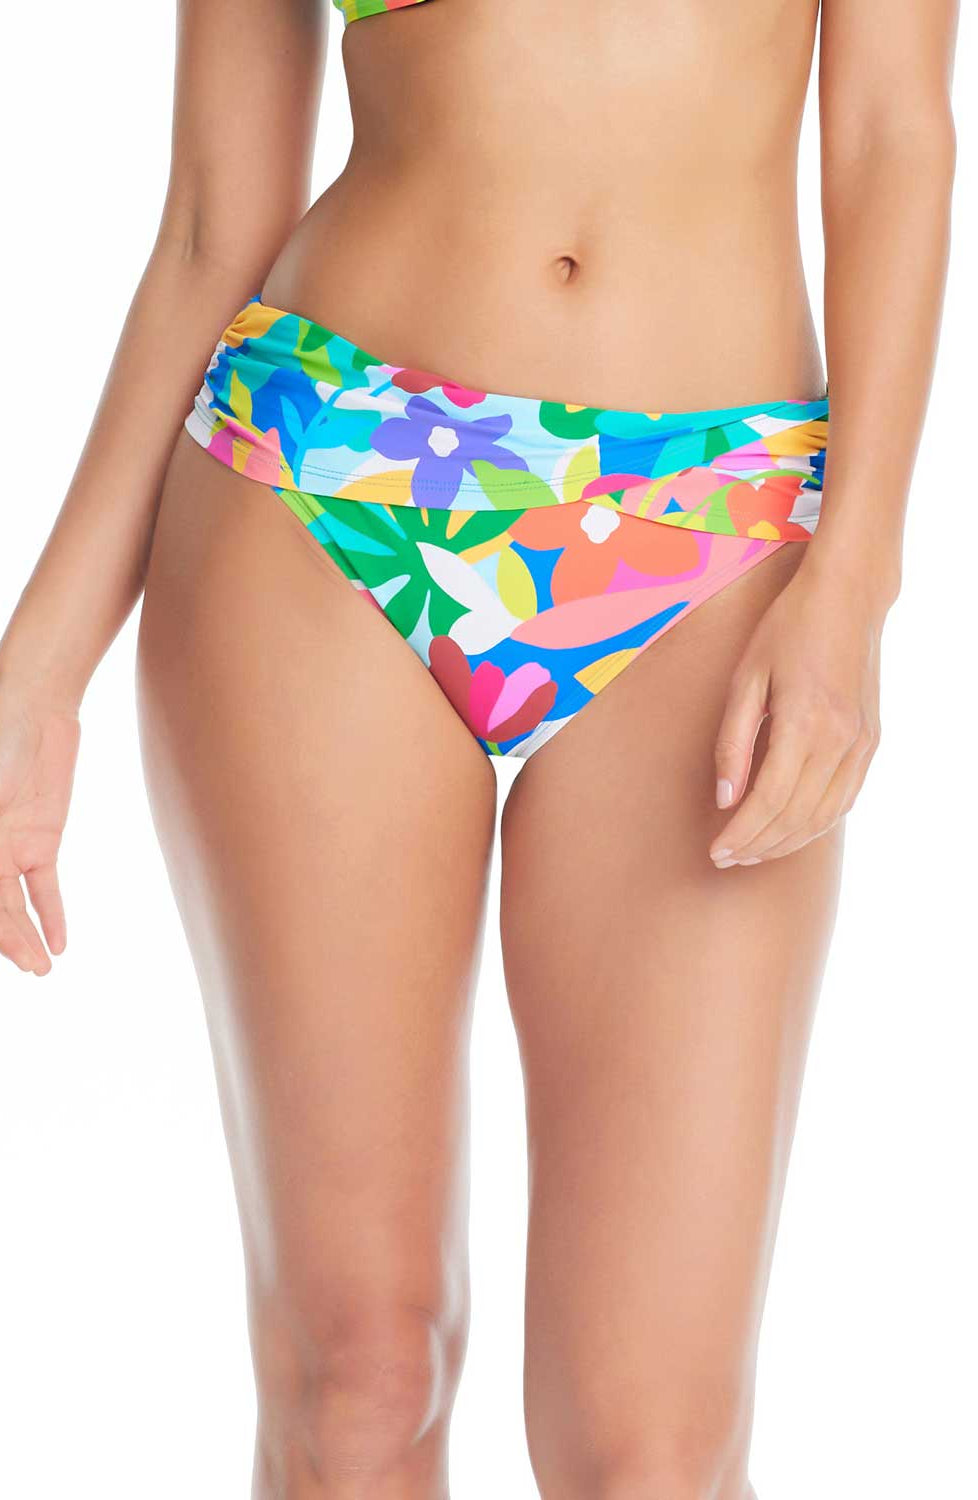 Retro High Cut Cheeky Bikini Bottom, Dippin' Daisy's Swimwear